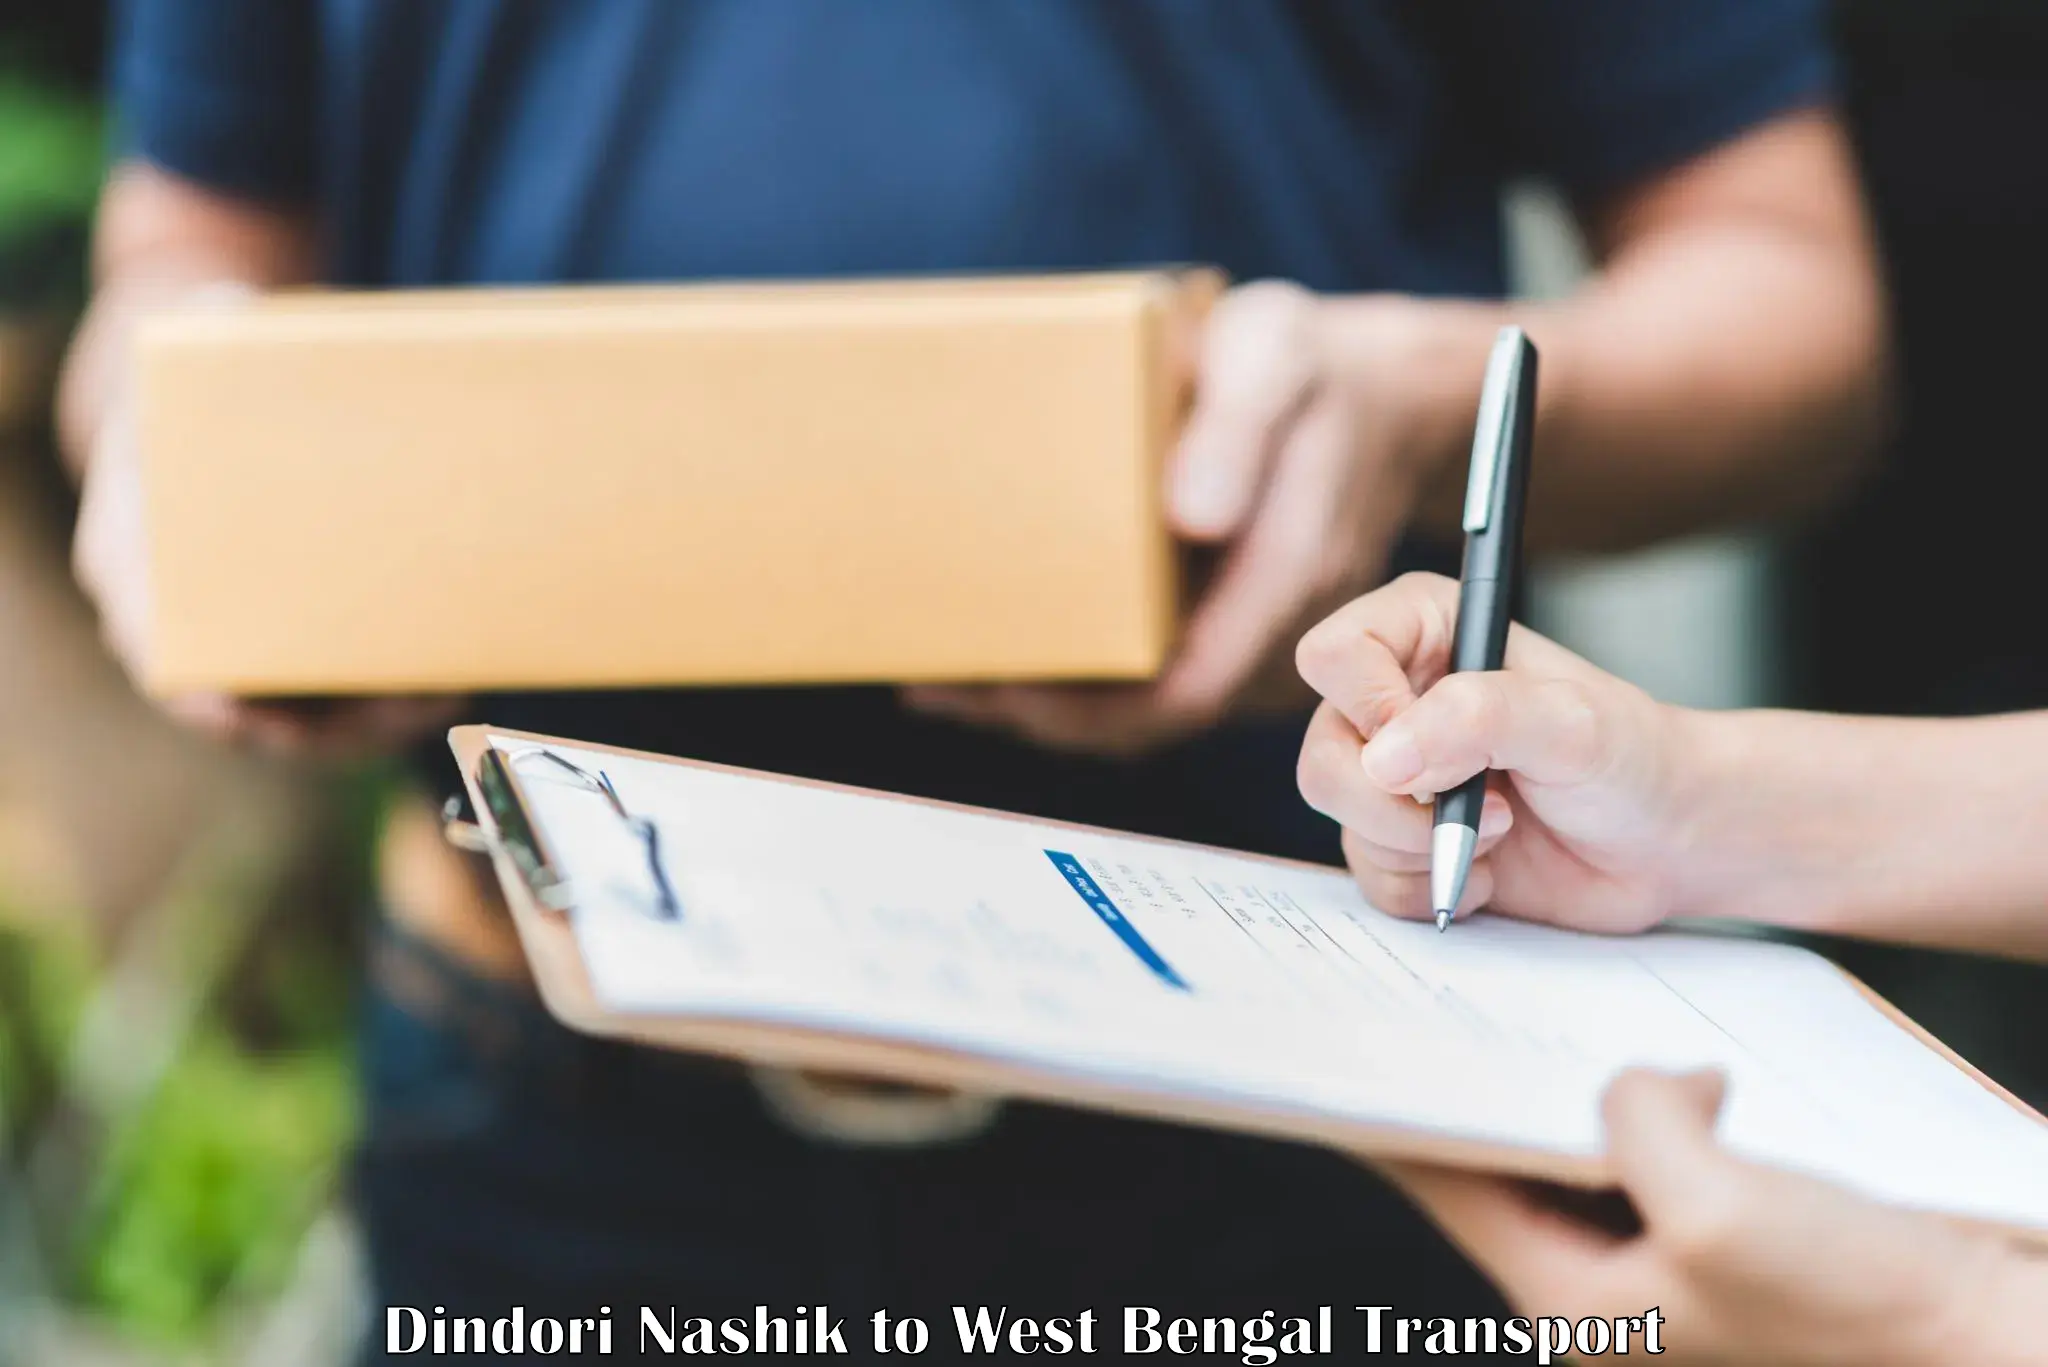 Express transport services Dindori Nashik to Basirhat